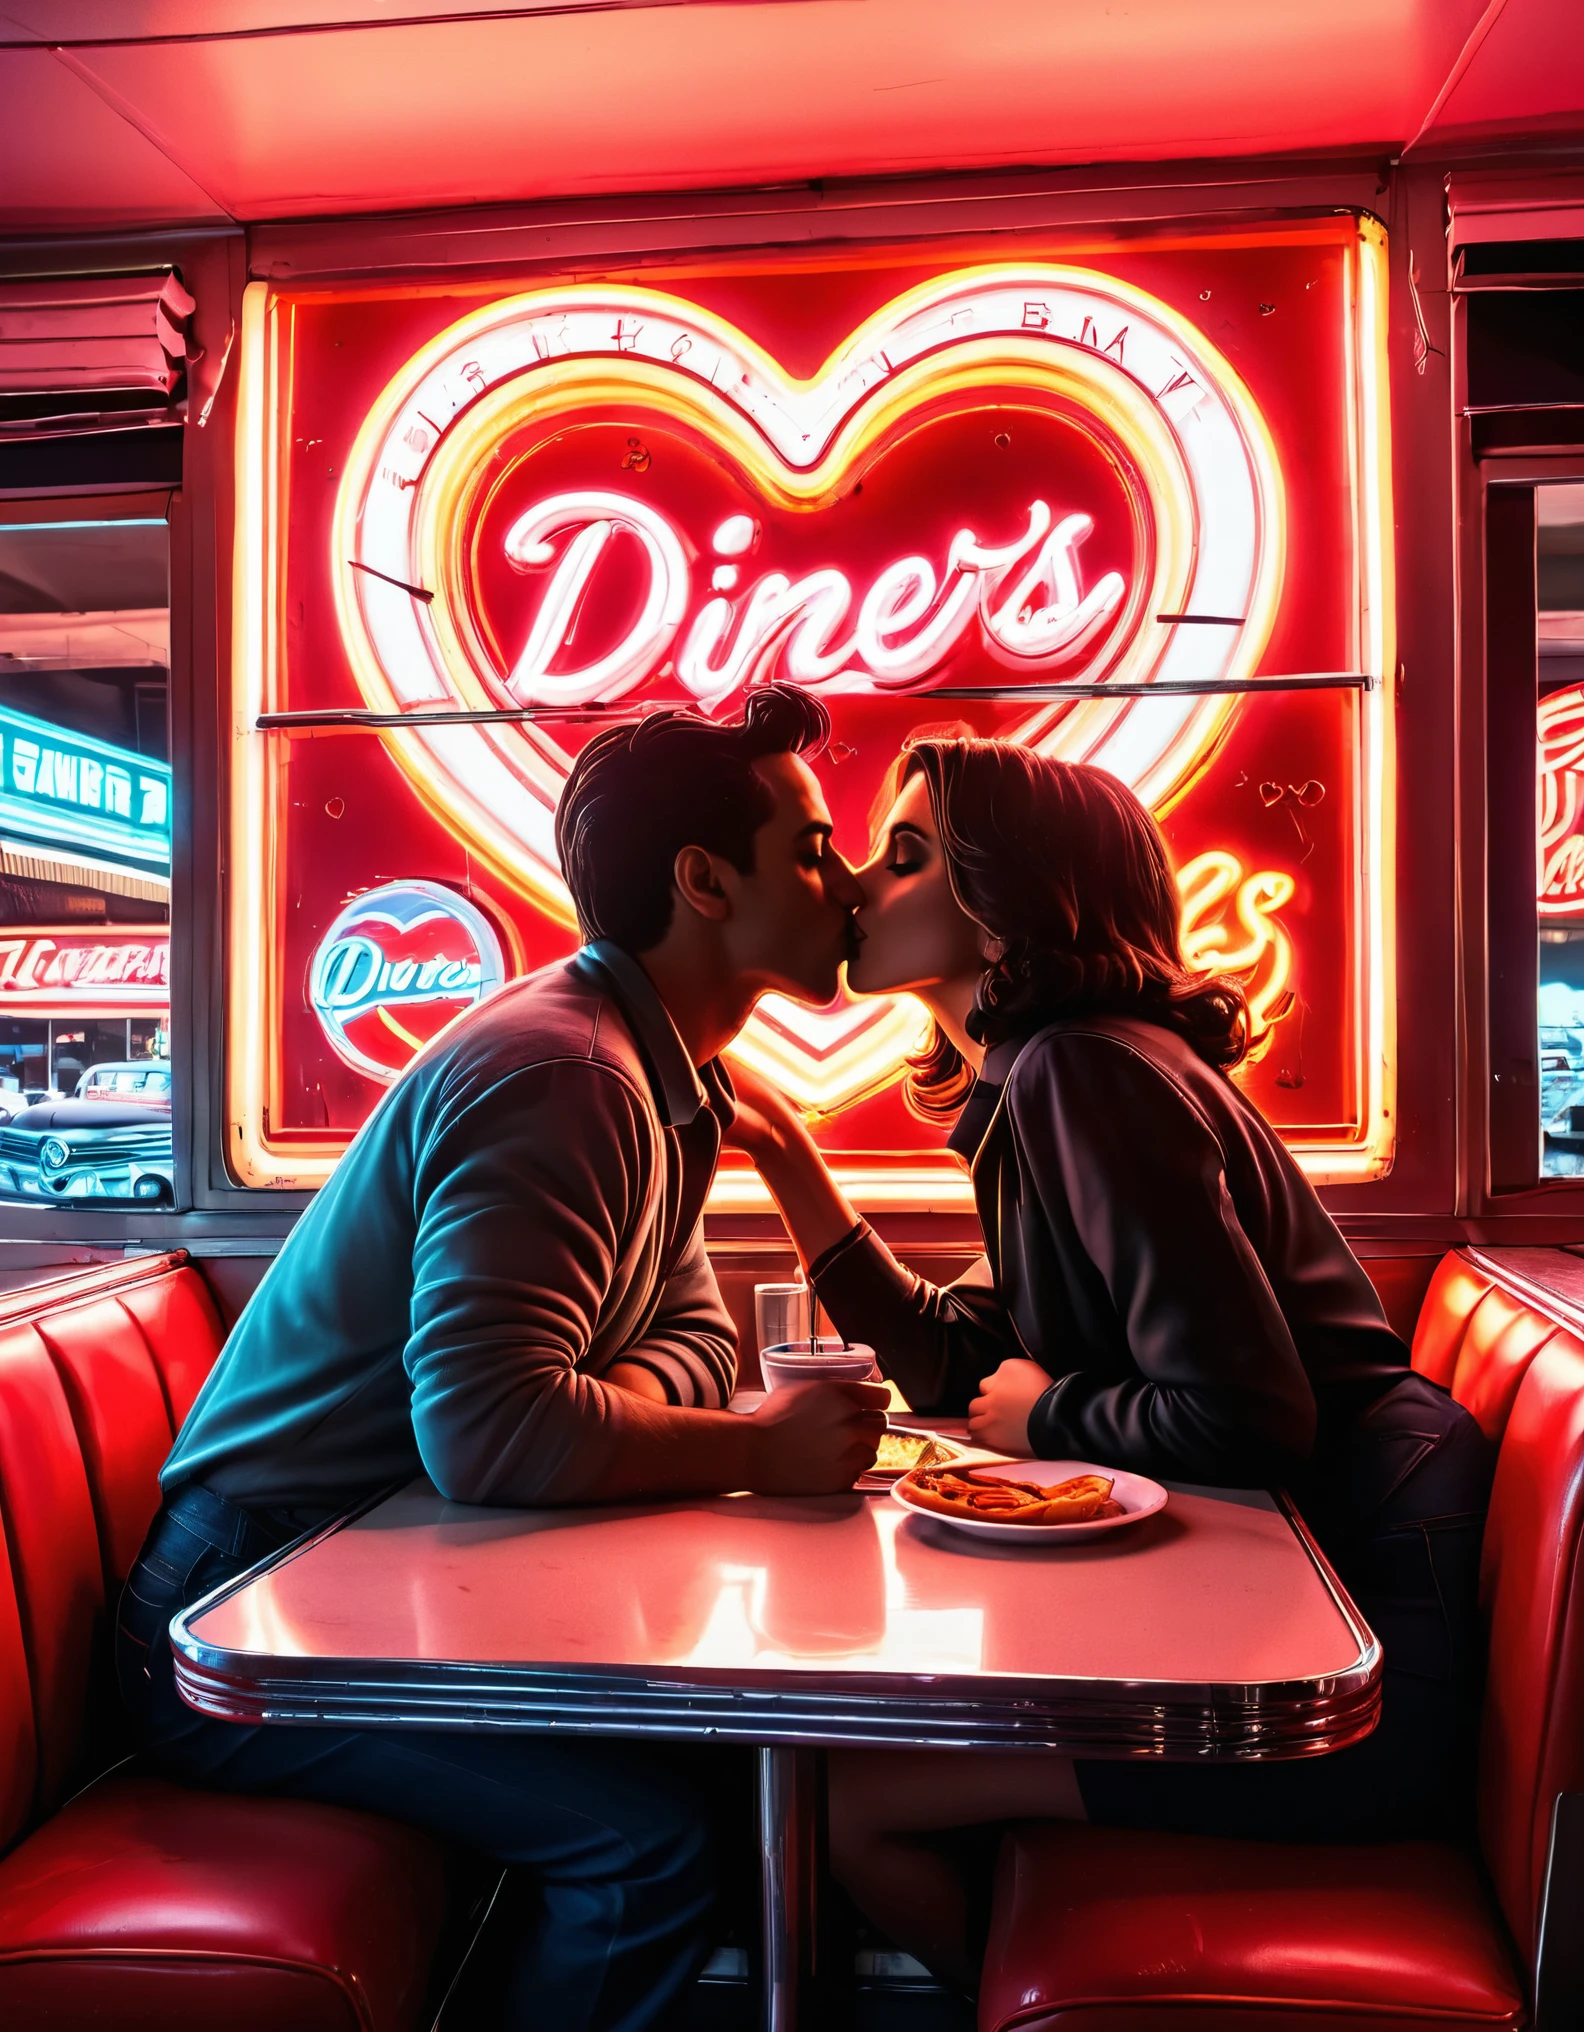 ผลงานศิลปะนีออนย้อนยุคที่มีภาพเงาของคู่รักจูบกันที่ร้านอาหาร, โดยมีป้ายไฟนีออนและรูปหัวใจอยู่ด้านหลัง, ชวนให้นึกถึงกลิ่นอายของยุค 1950